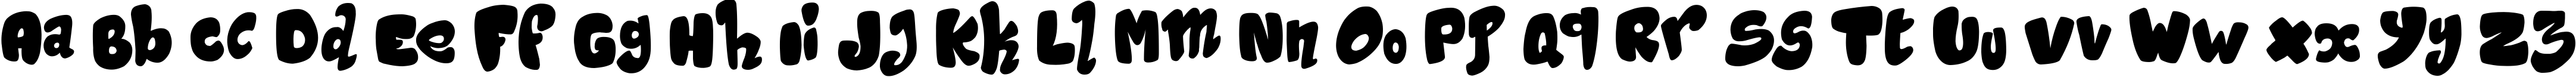 Пример написания английского алфавита шрифтом Magic Sound